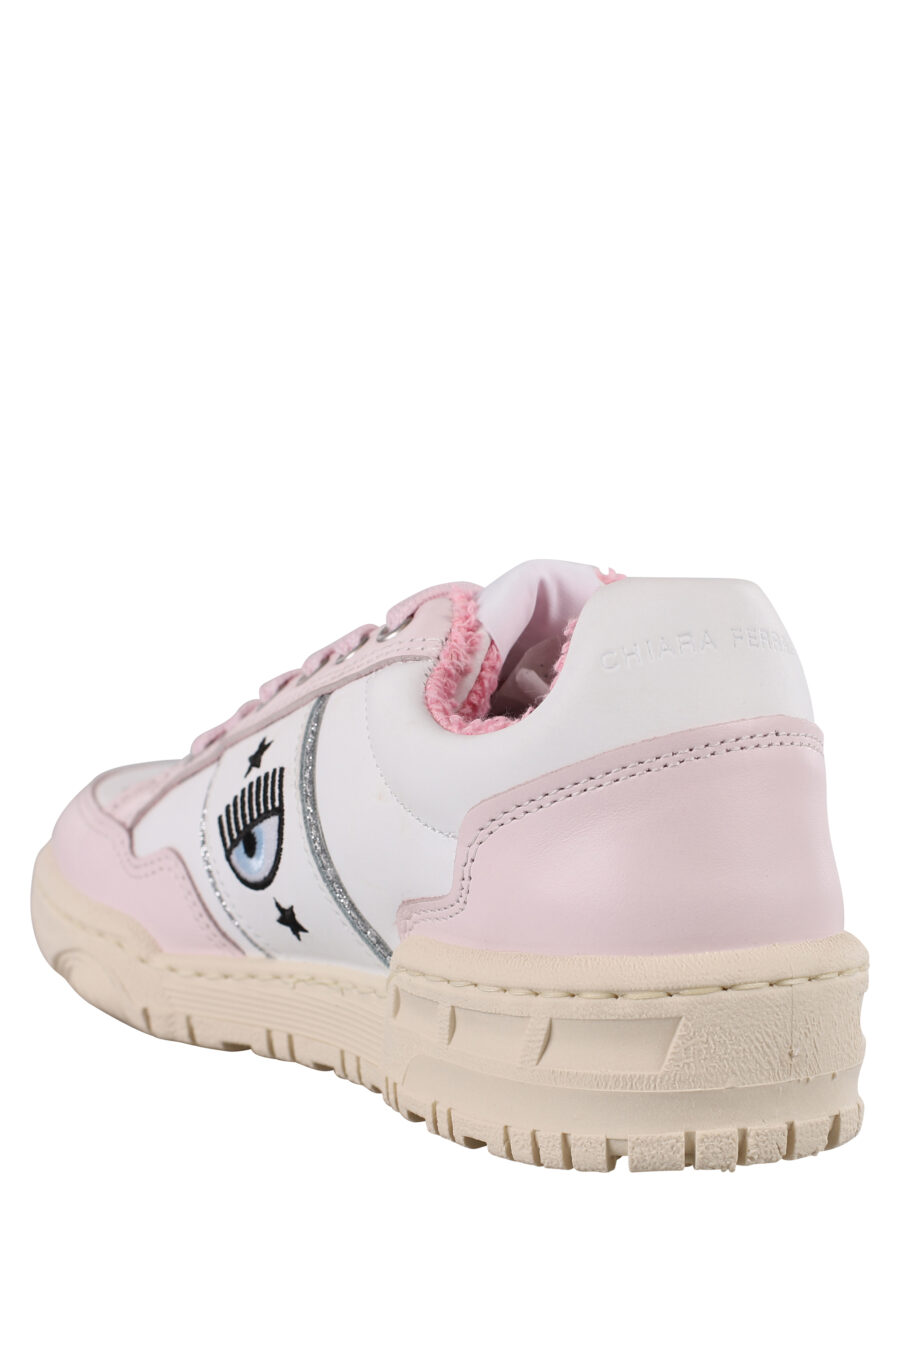 Zapatillas blancas y rosas con logo ojo e interior felpudo - IMG 1163